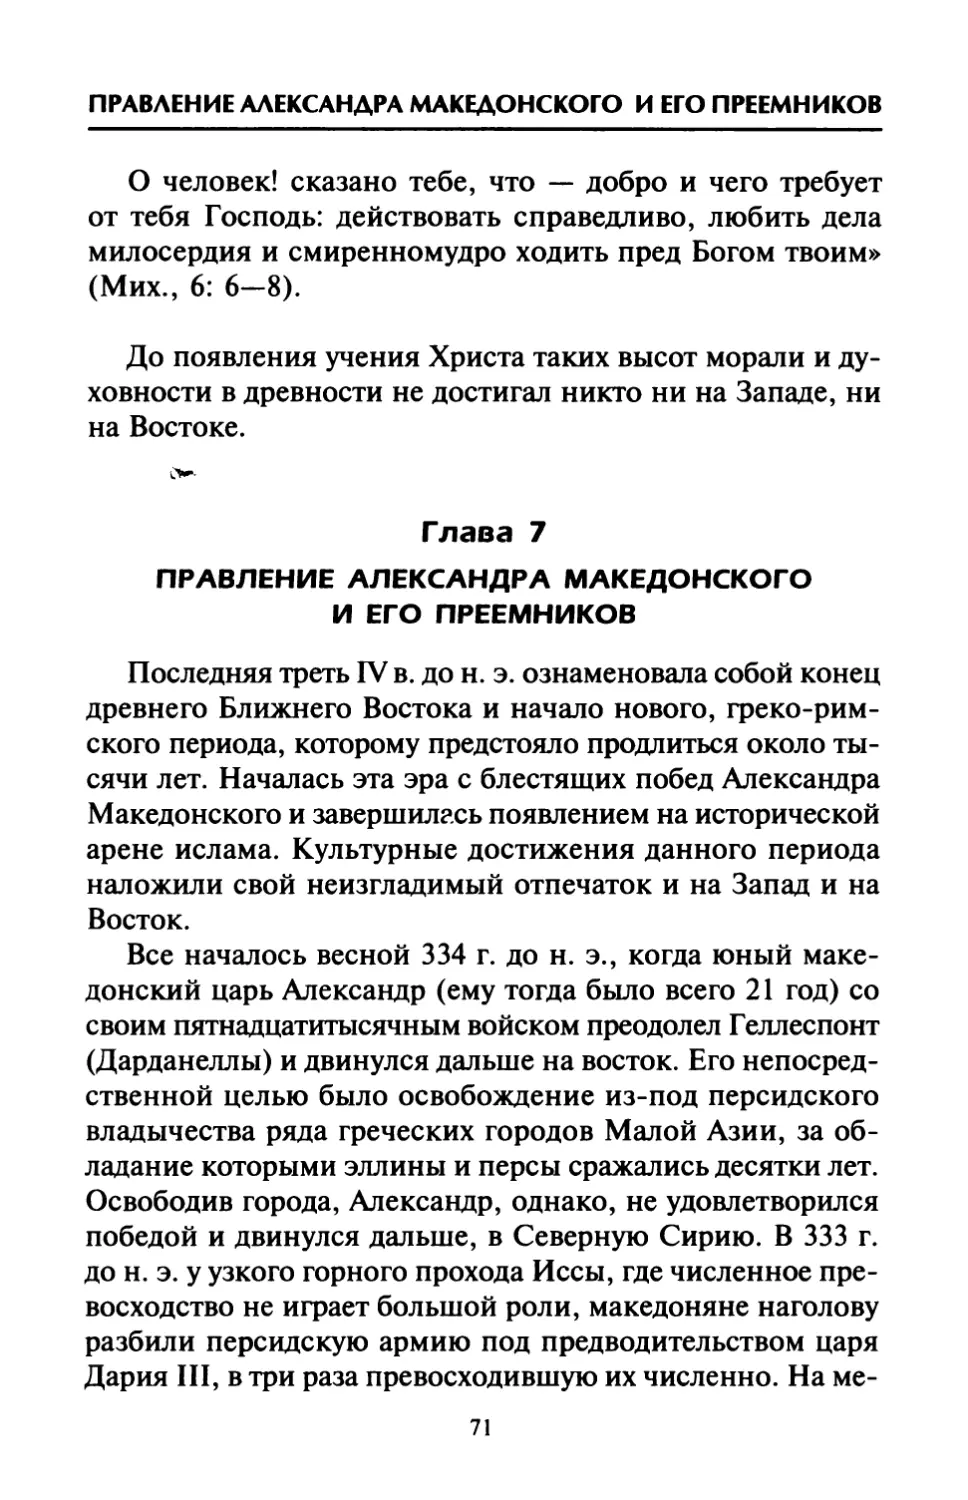 Глава  7.  Правление  Александра  Македонского и  его  преемников